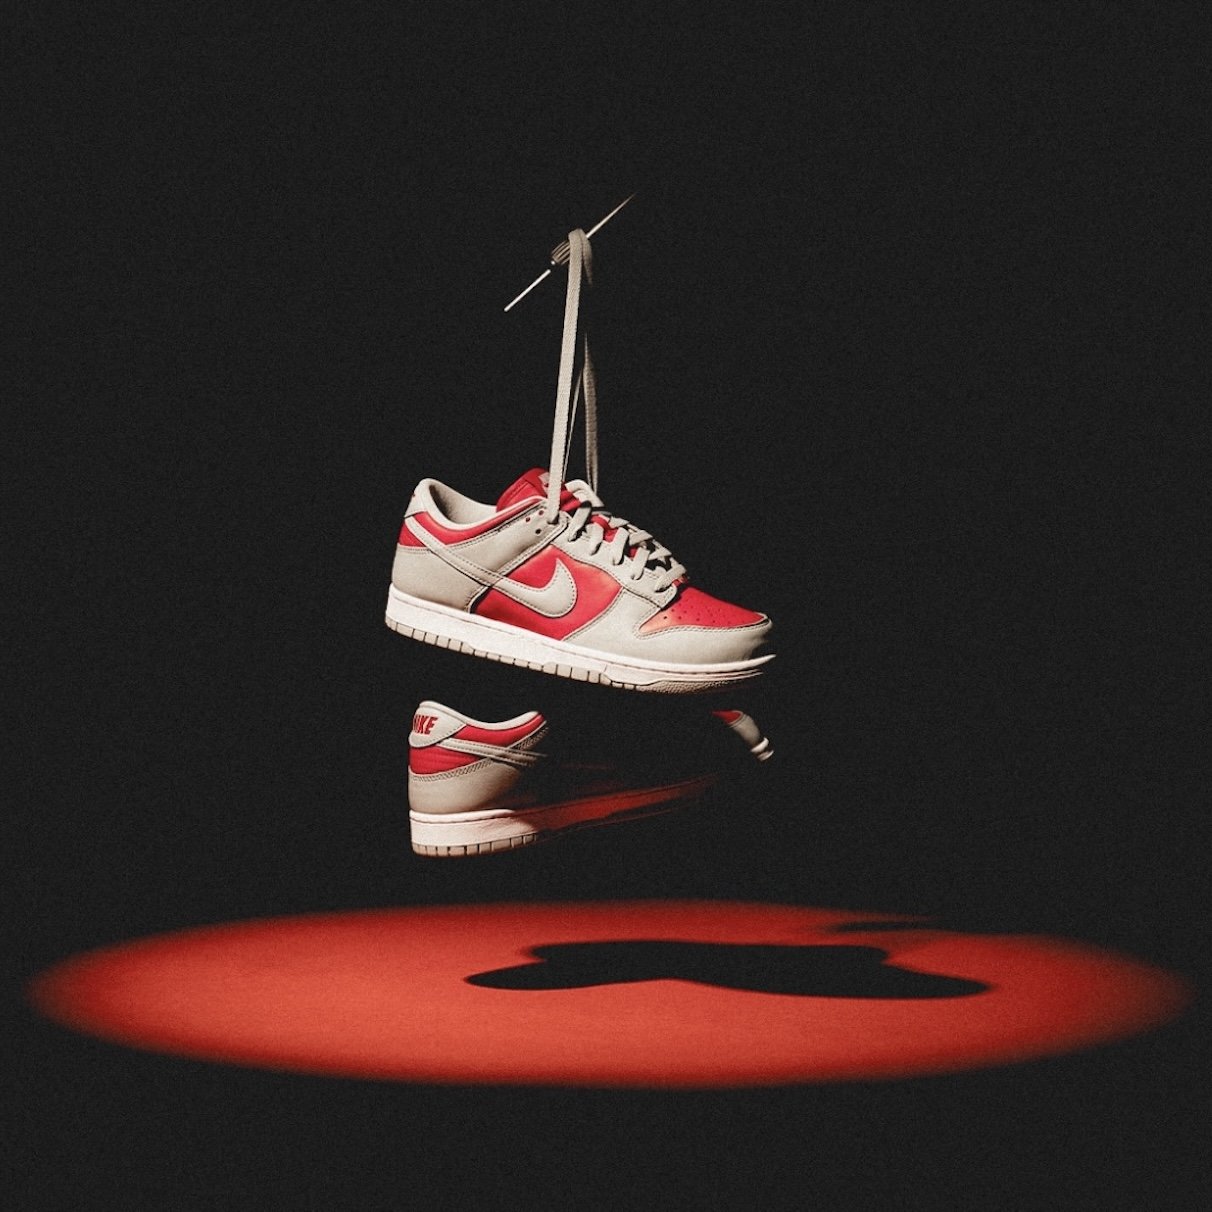 Secrets de Sneakerhead : 10 astuces pour repérer les fausses baskets